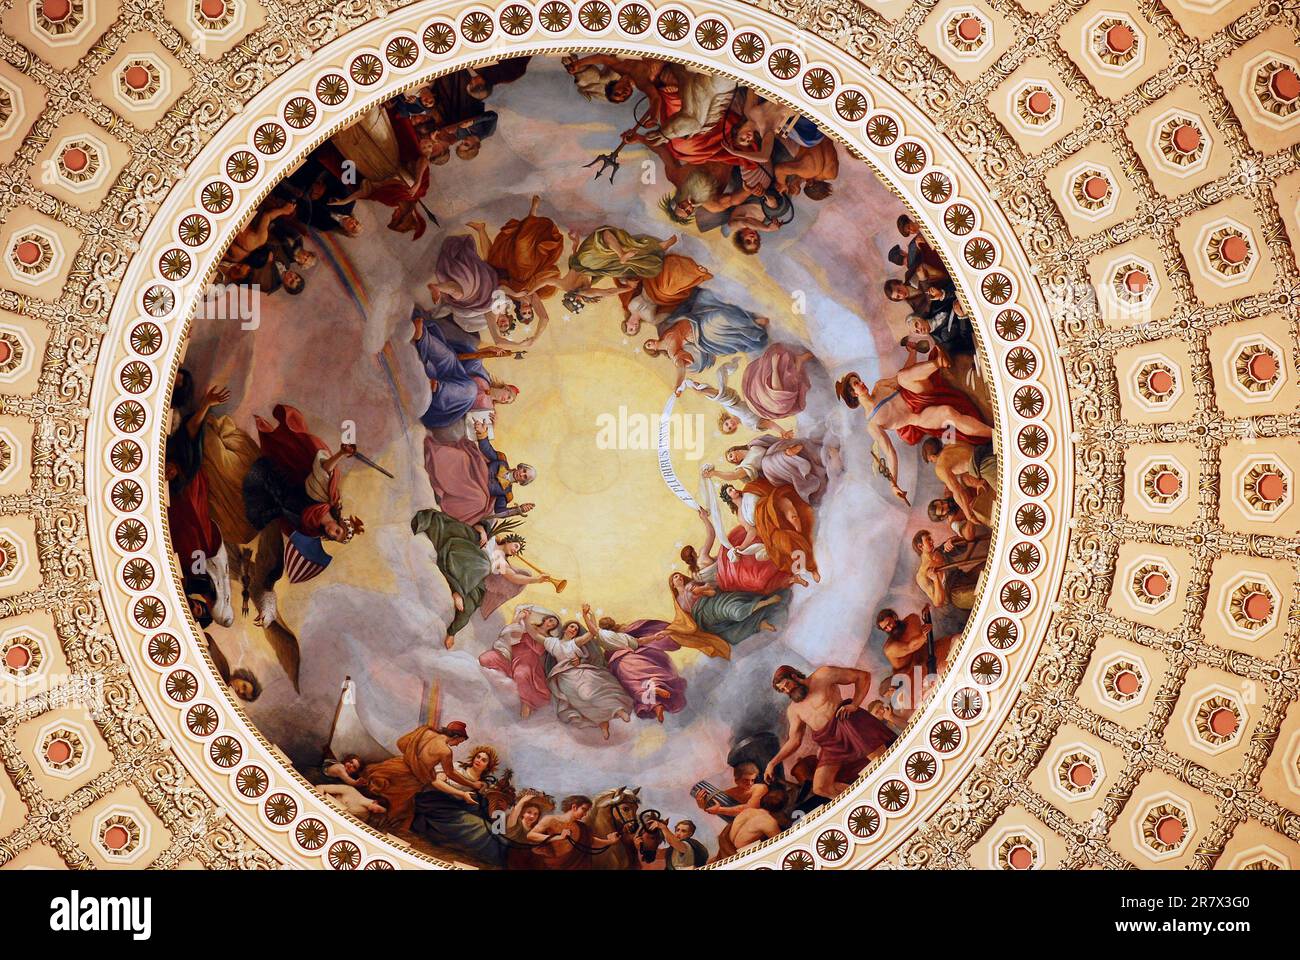 Die Apotheosis of Washington, ein Fresco-Gemälde von Constantino Brumidi, schwebt ganz oben im Inneren des Kapitoldoms der Vereinigten Staaten Stockfoto